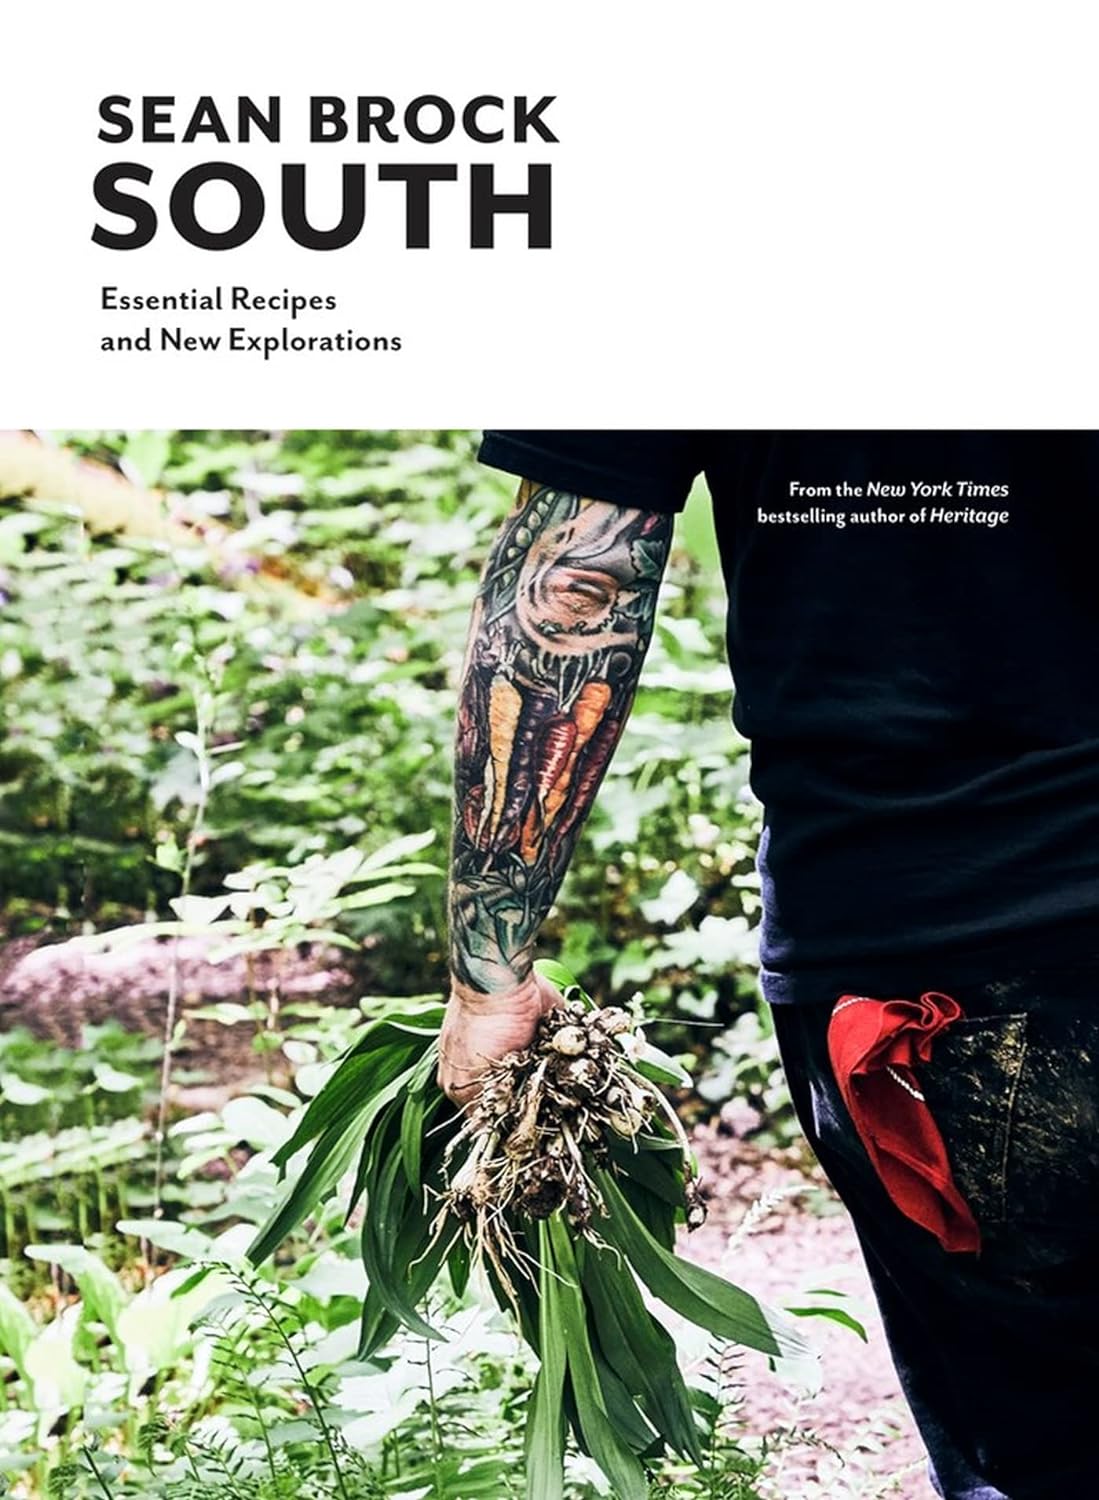 South by Sean Brock